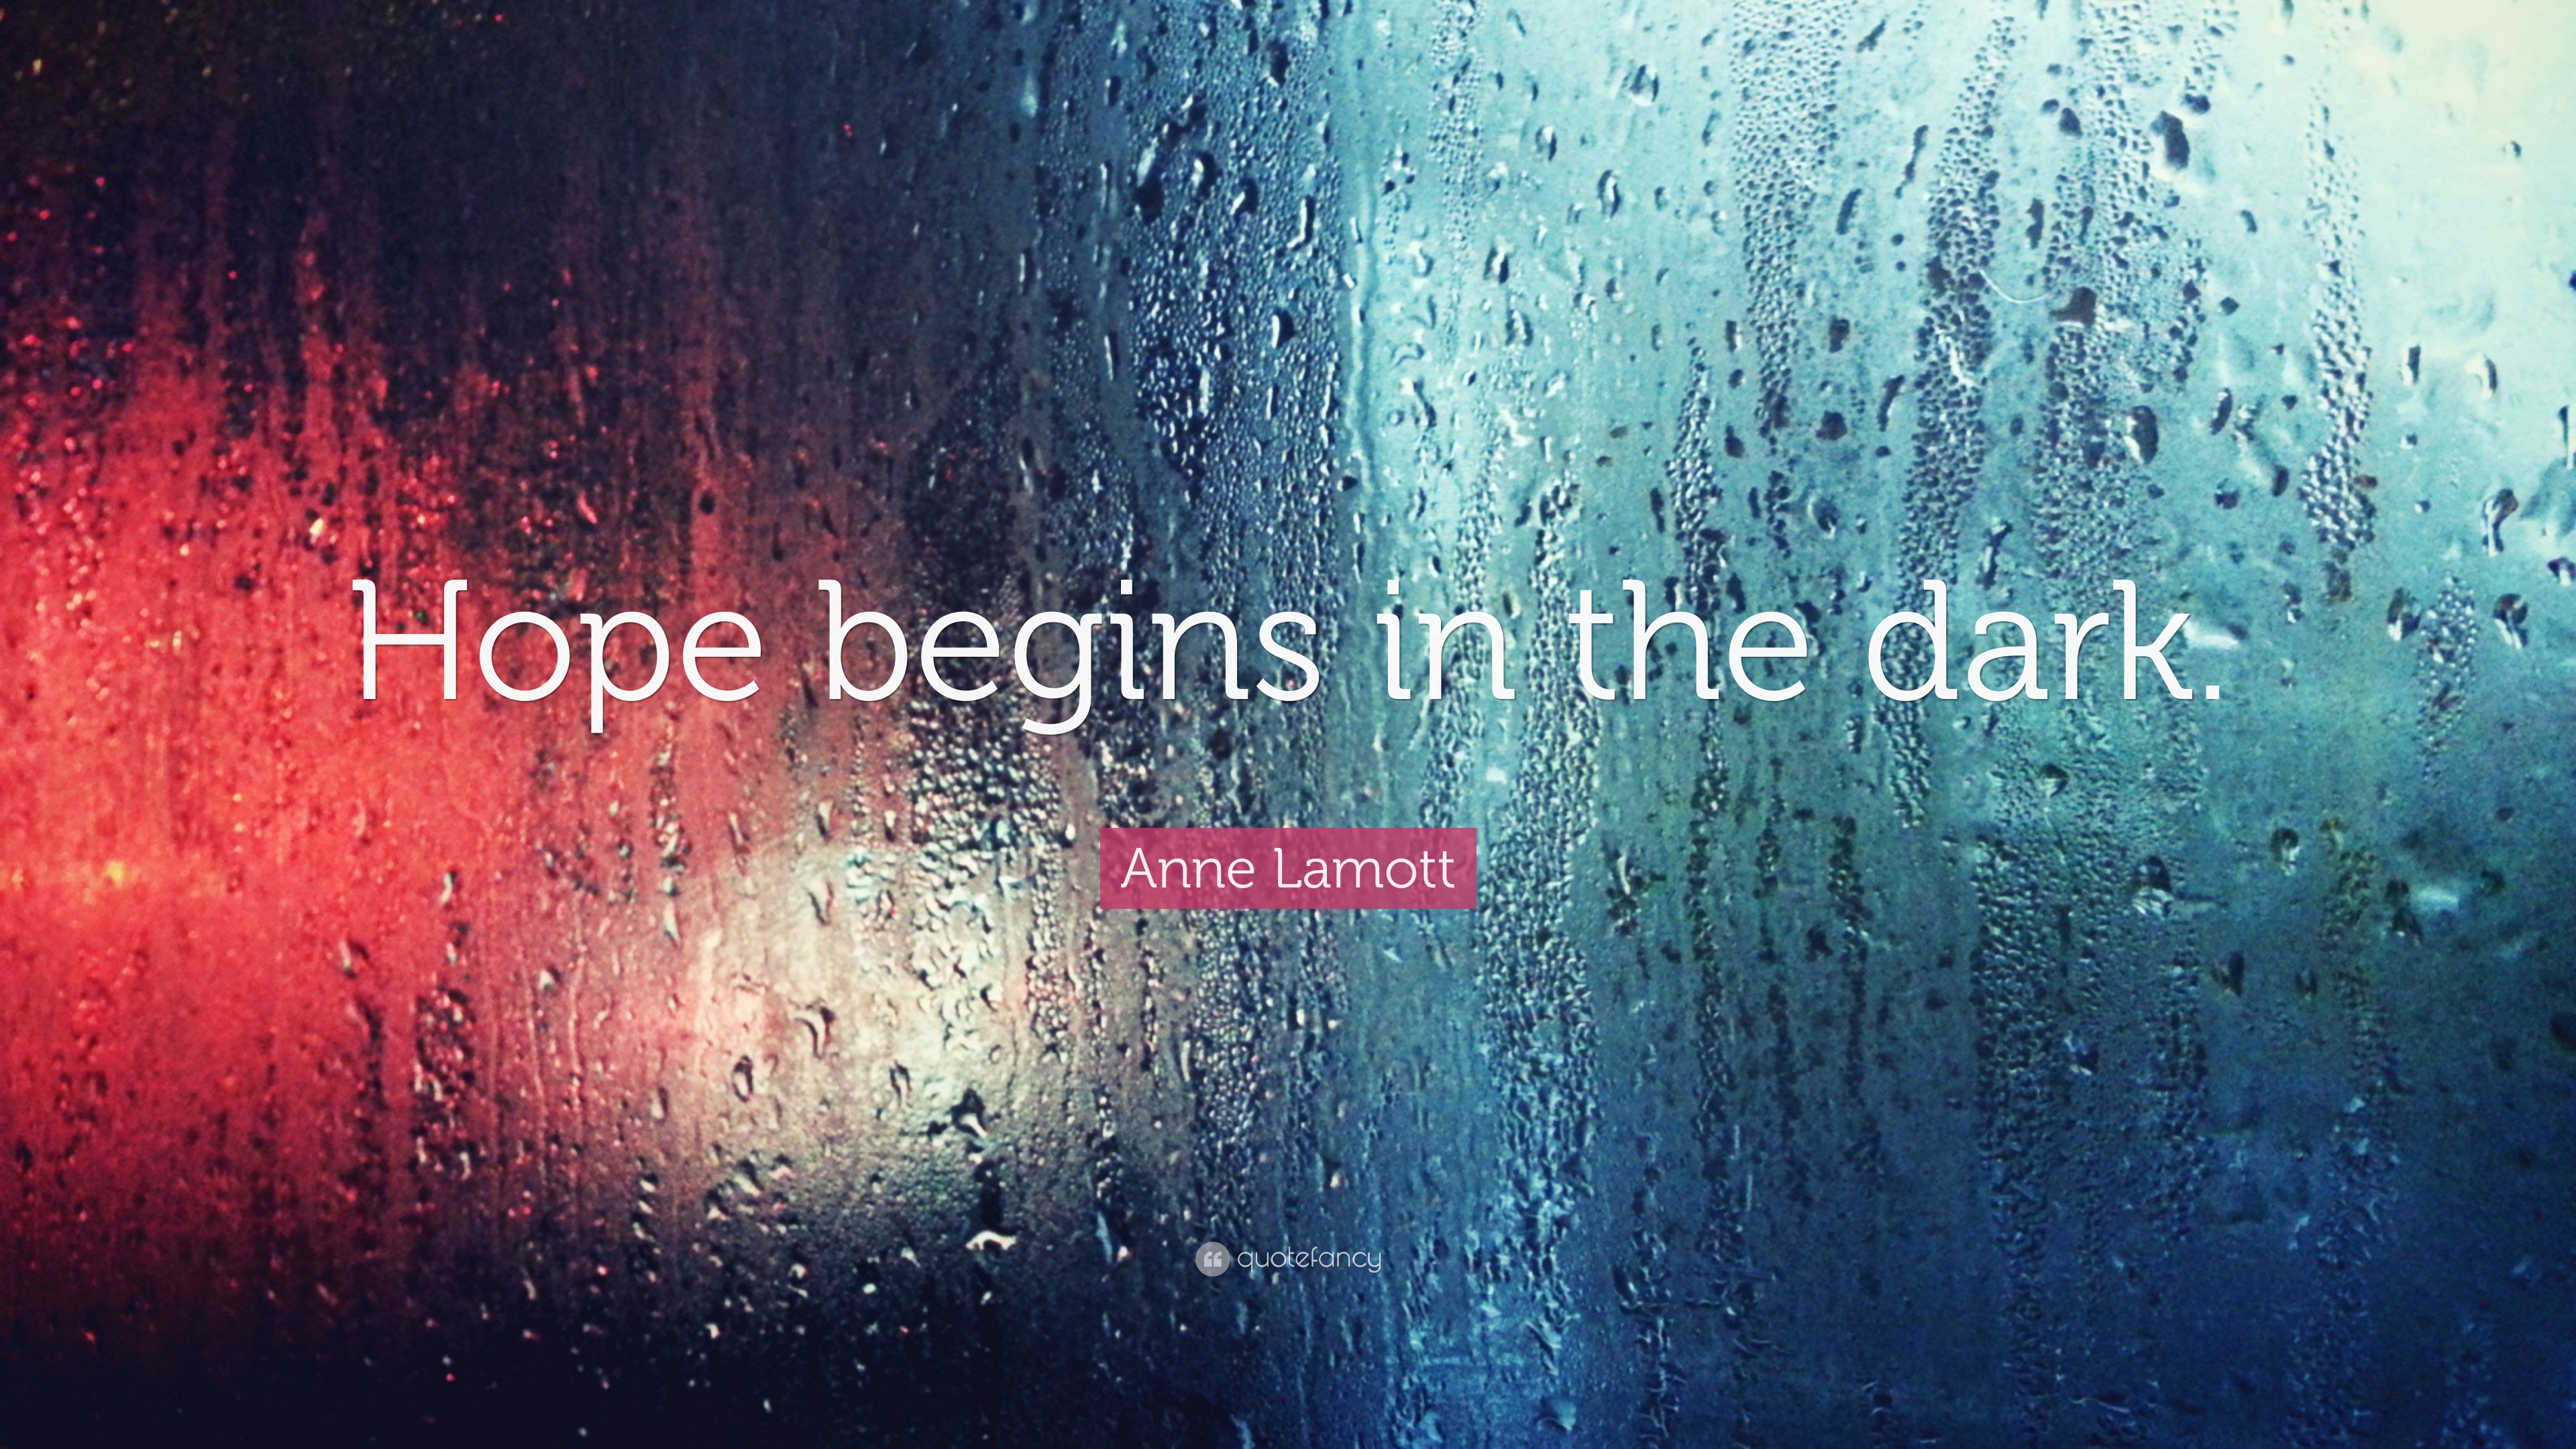 4714238 Anne Lamott Quote Hope begins in the dark